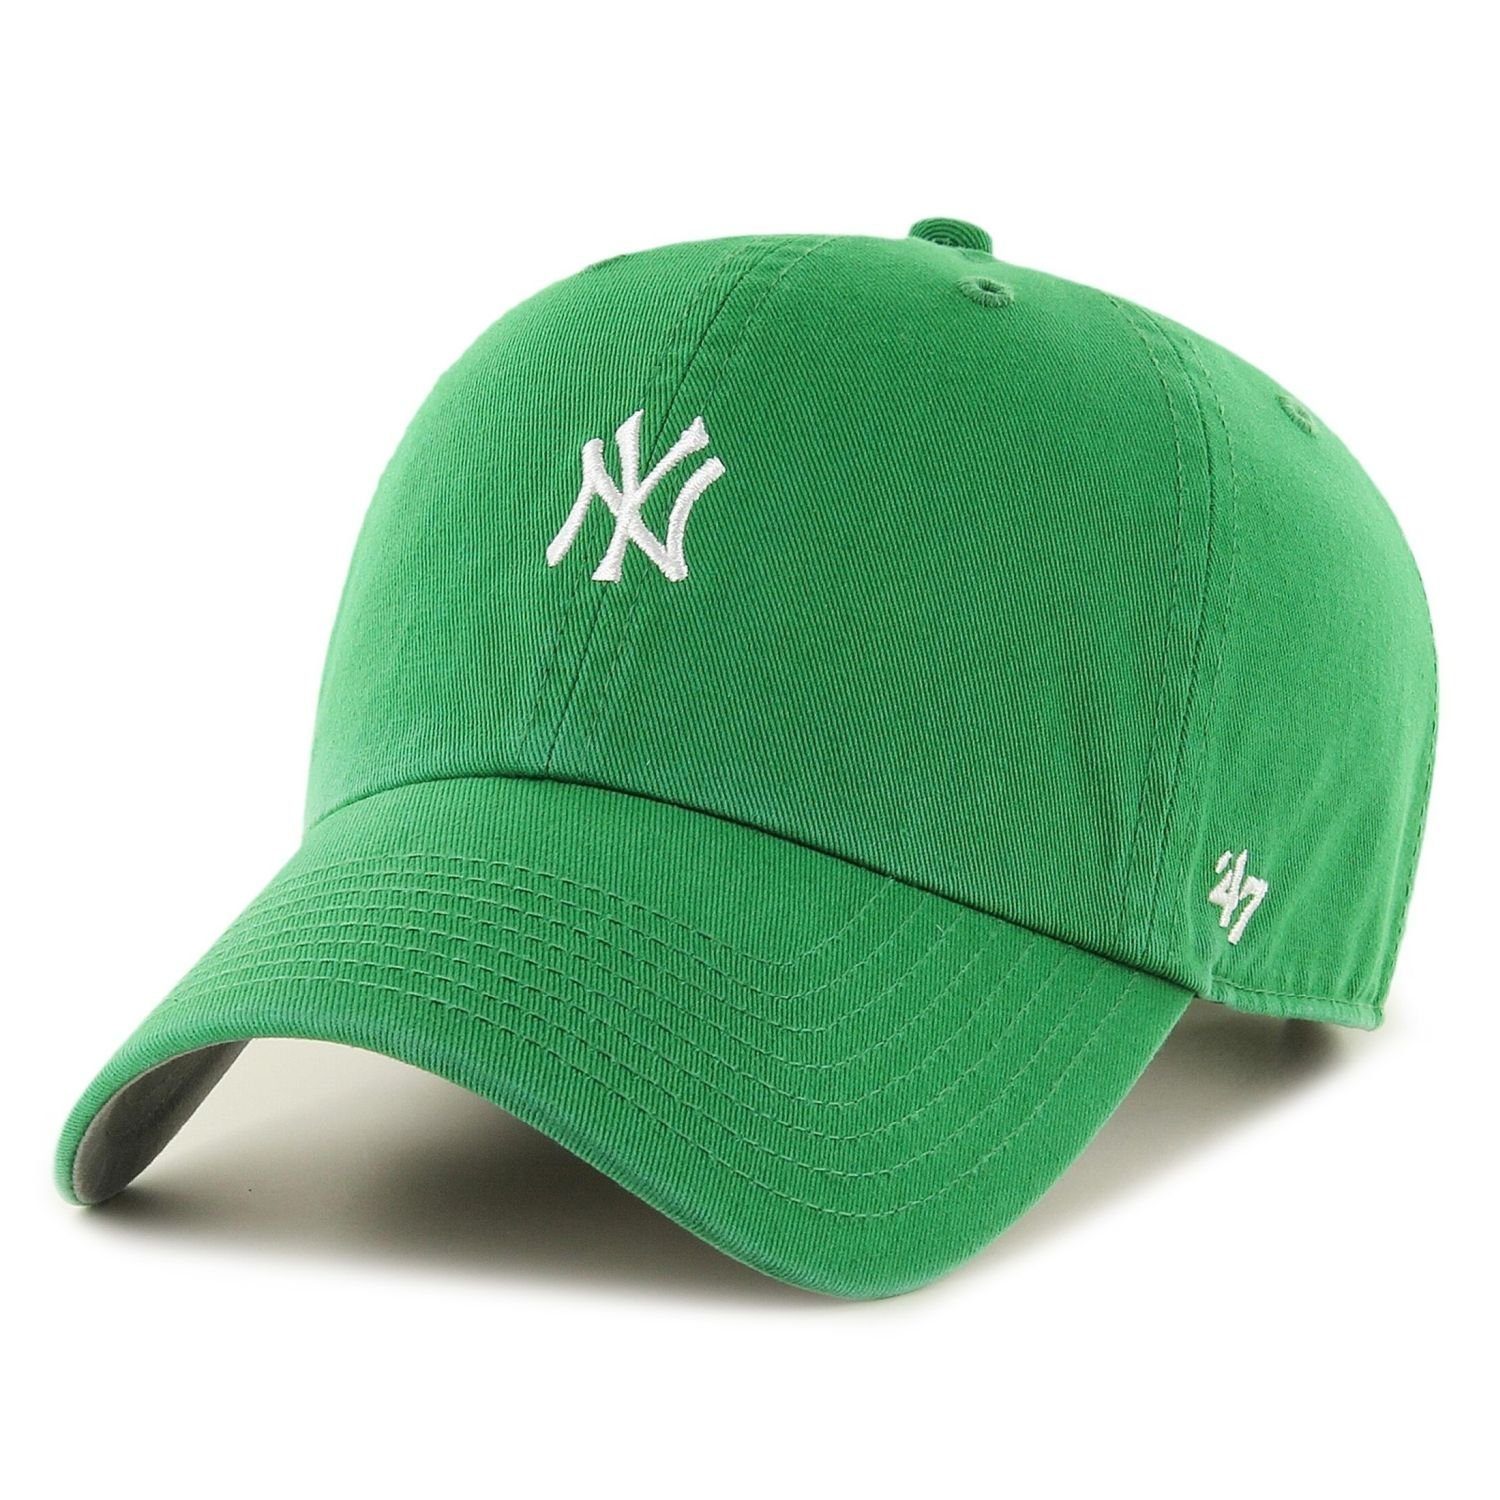 x27;47 Brand Baseball Yankees green BASE New Cap York